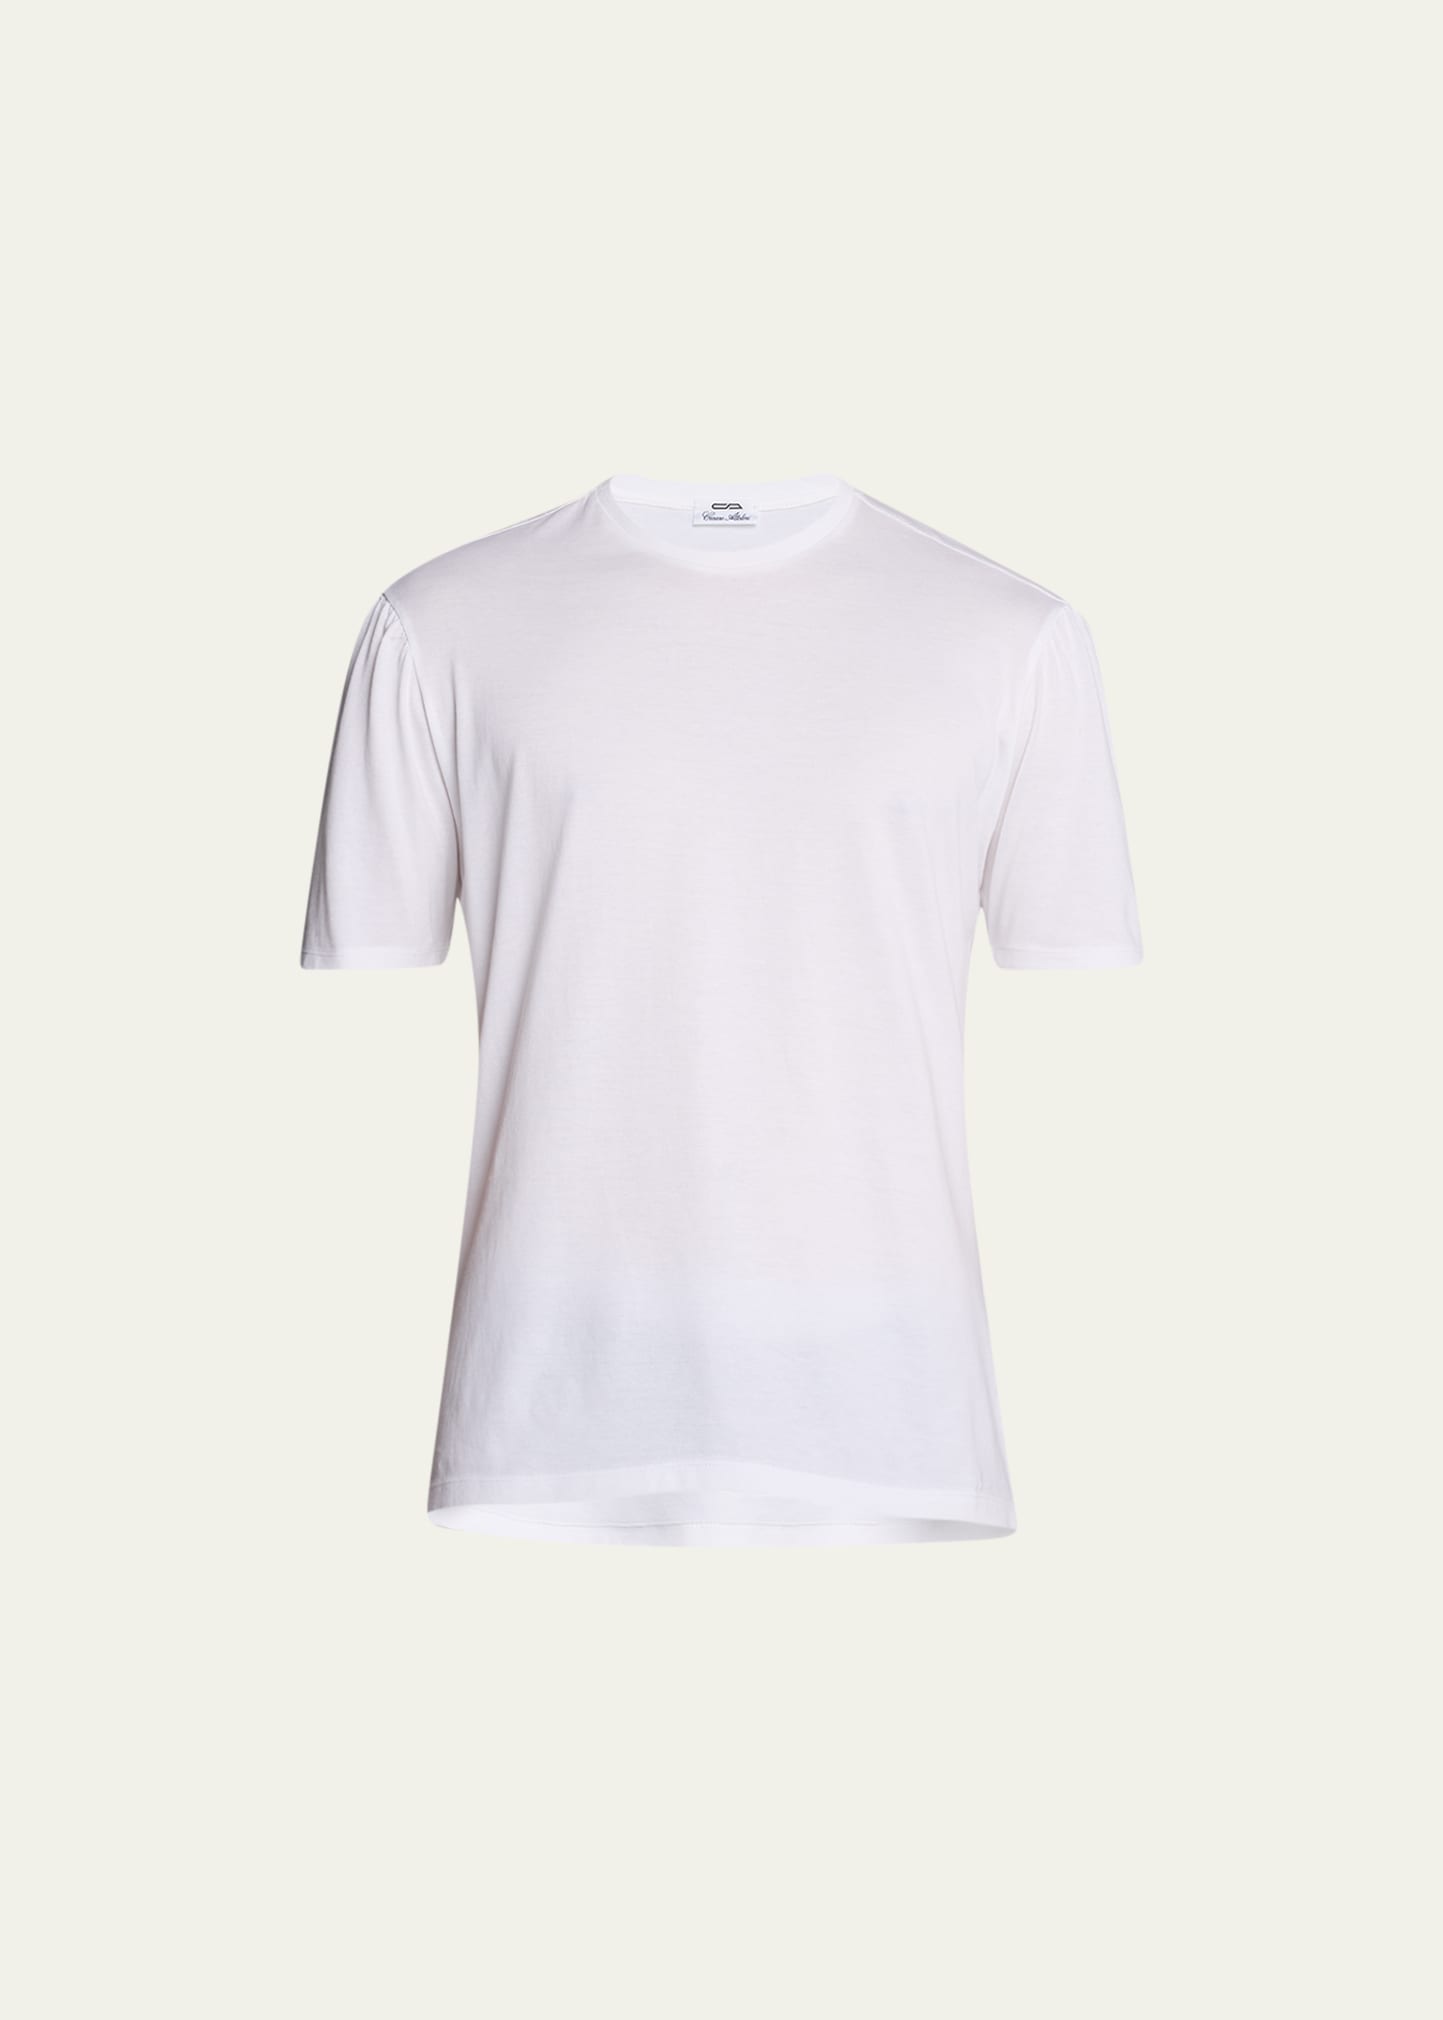 Men's Cotton Crew T-Shirt